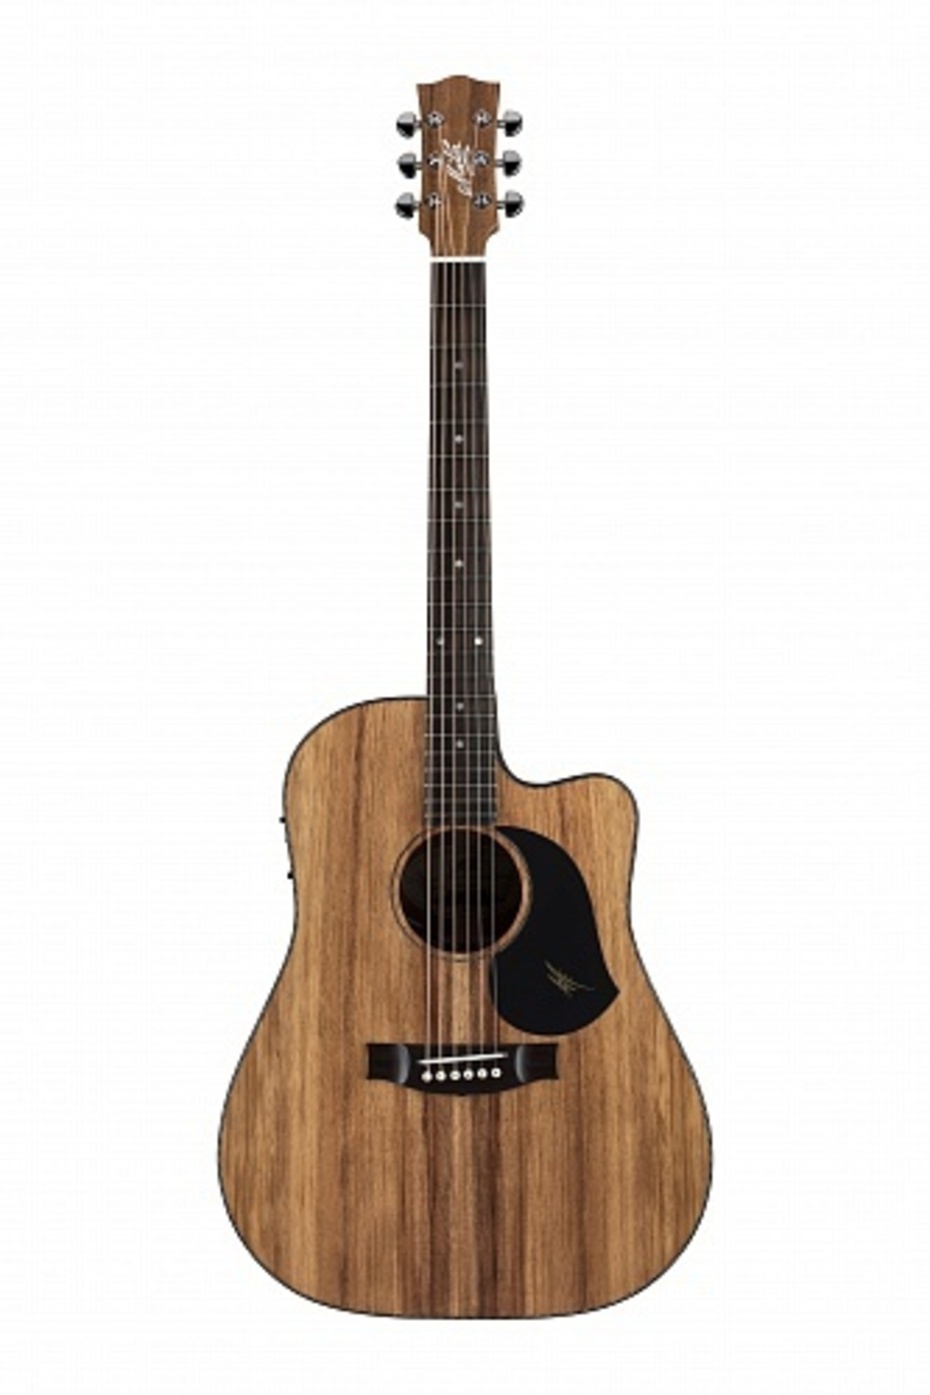 Электроакустические гитары Maton EBW70C классические гитары ortega r122 family series чехол в комплекте